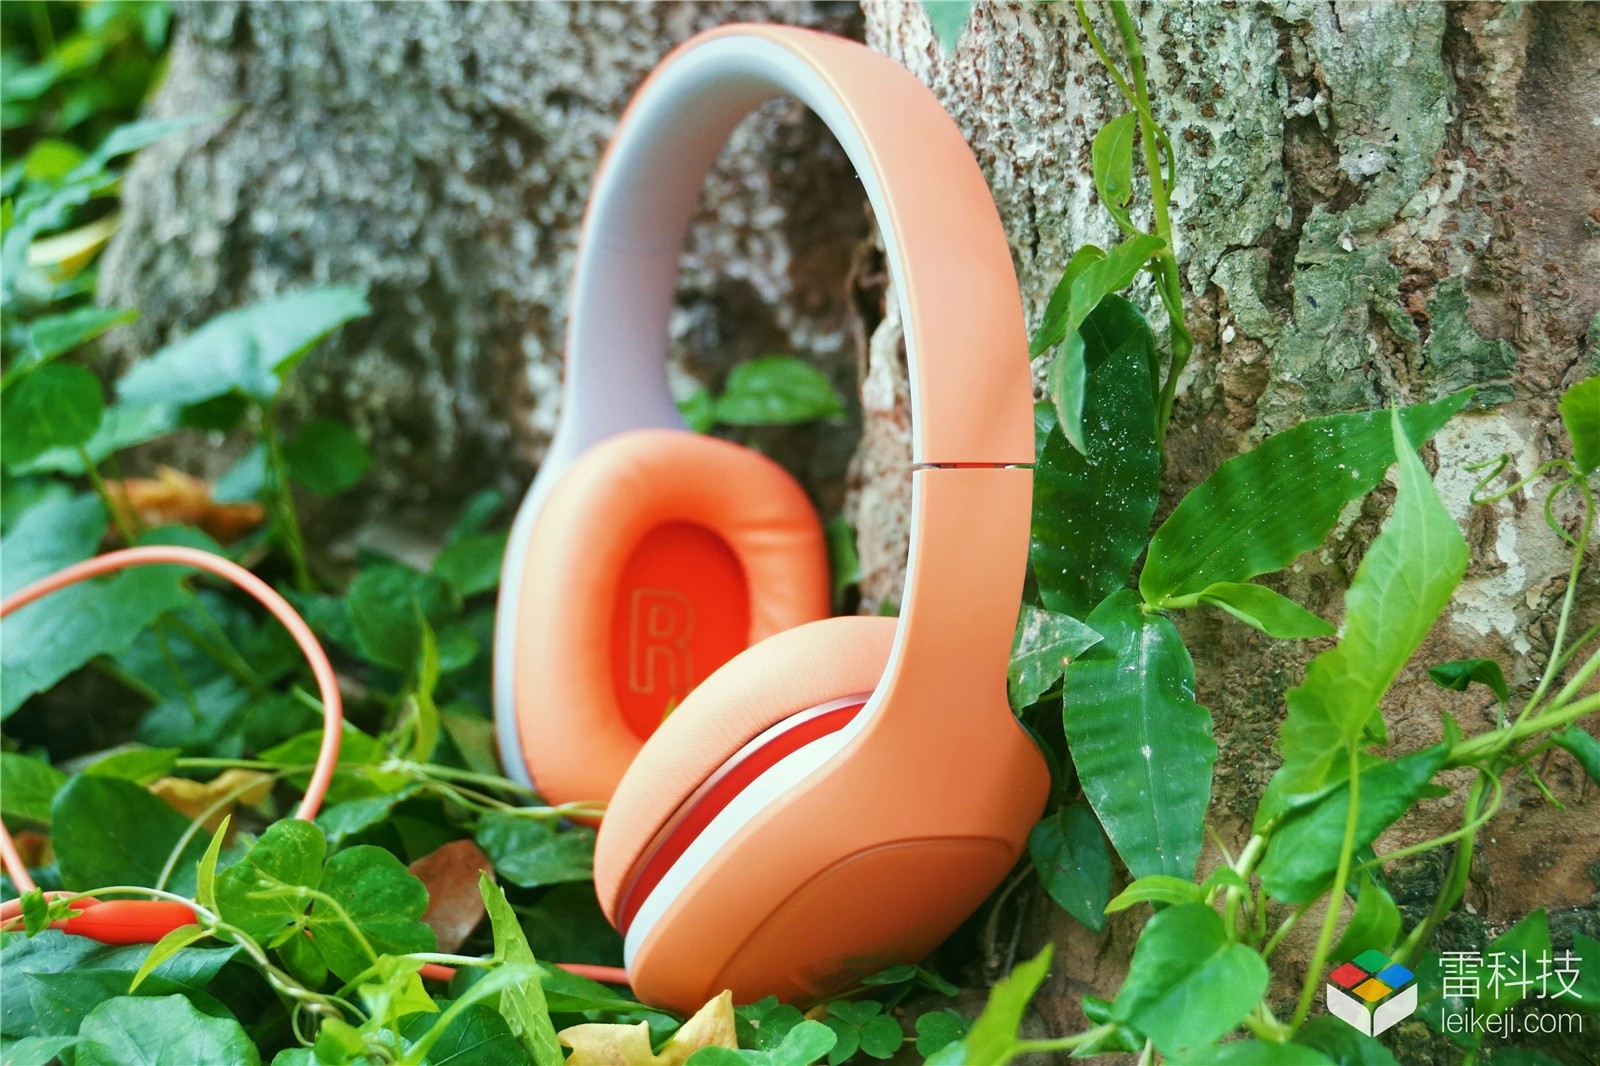 小米头戴式耳机轻松版新款橙色图赏:美到窒息